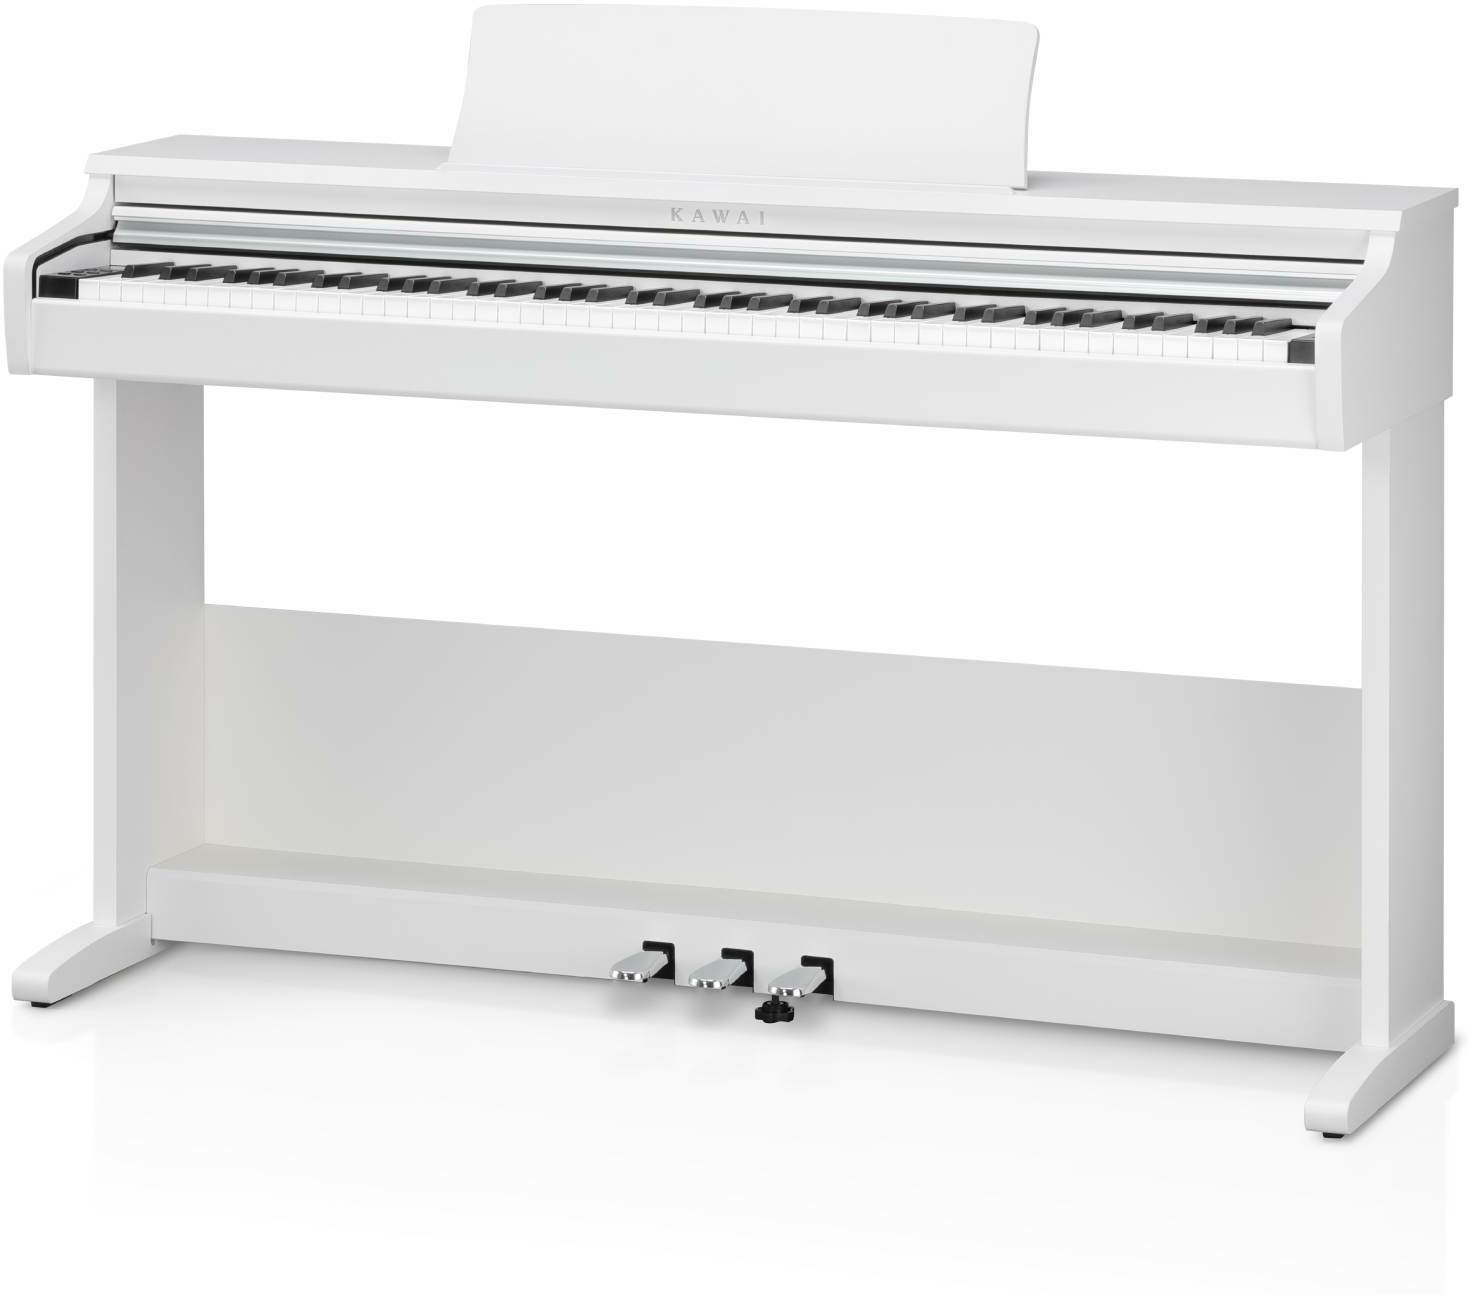 Kawai Kdp75 Wh - Digitale piano met meubel - Main picture